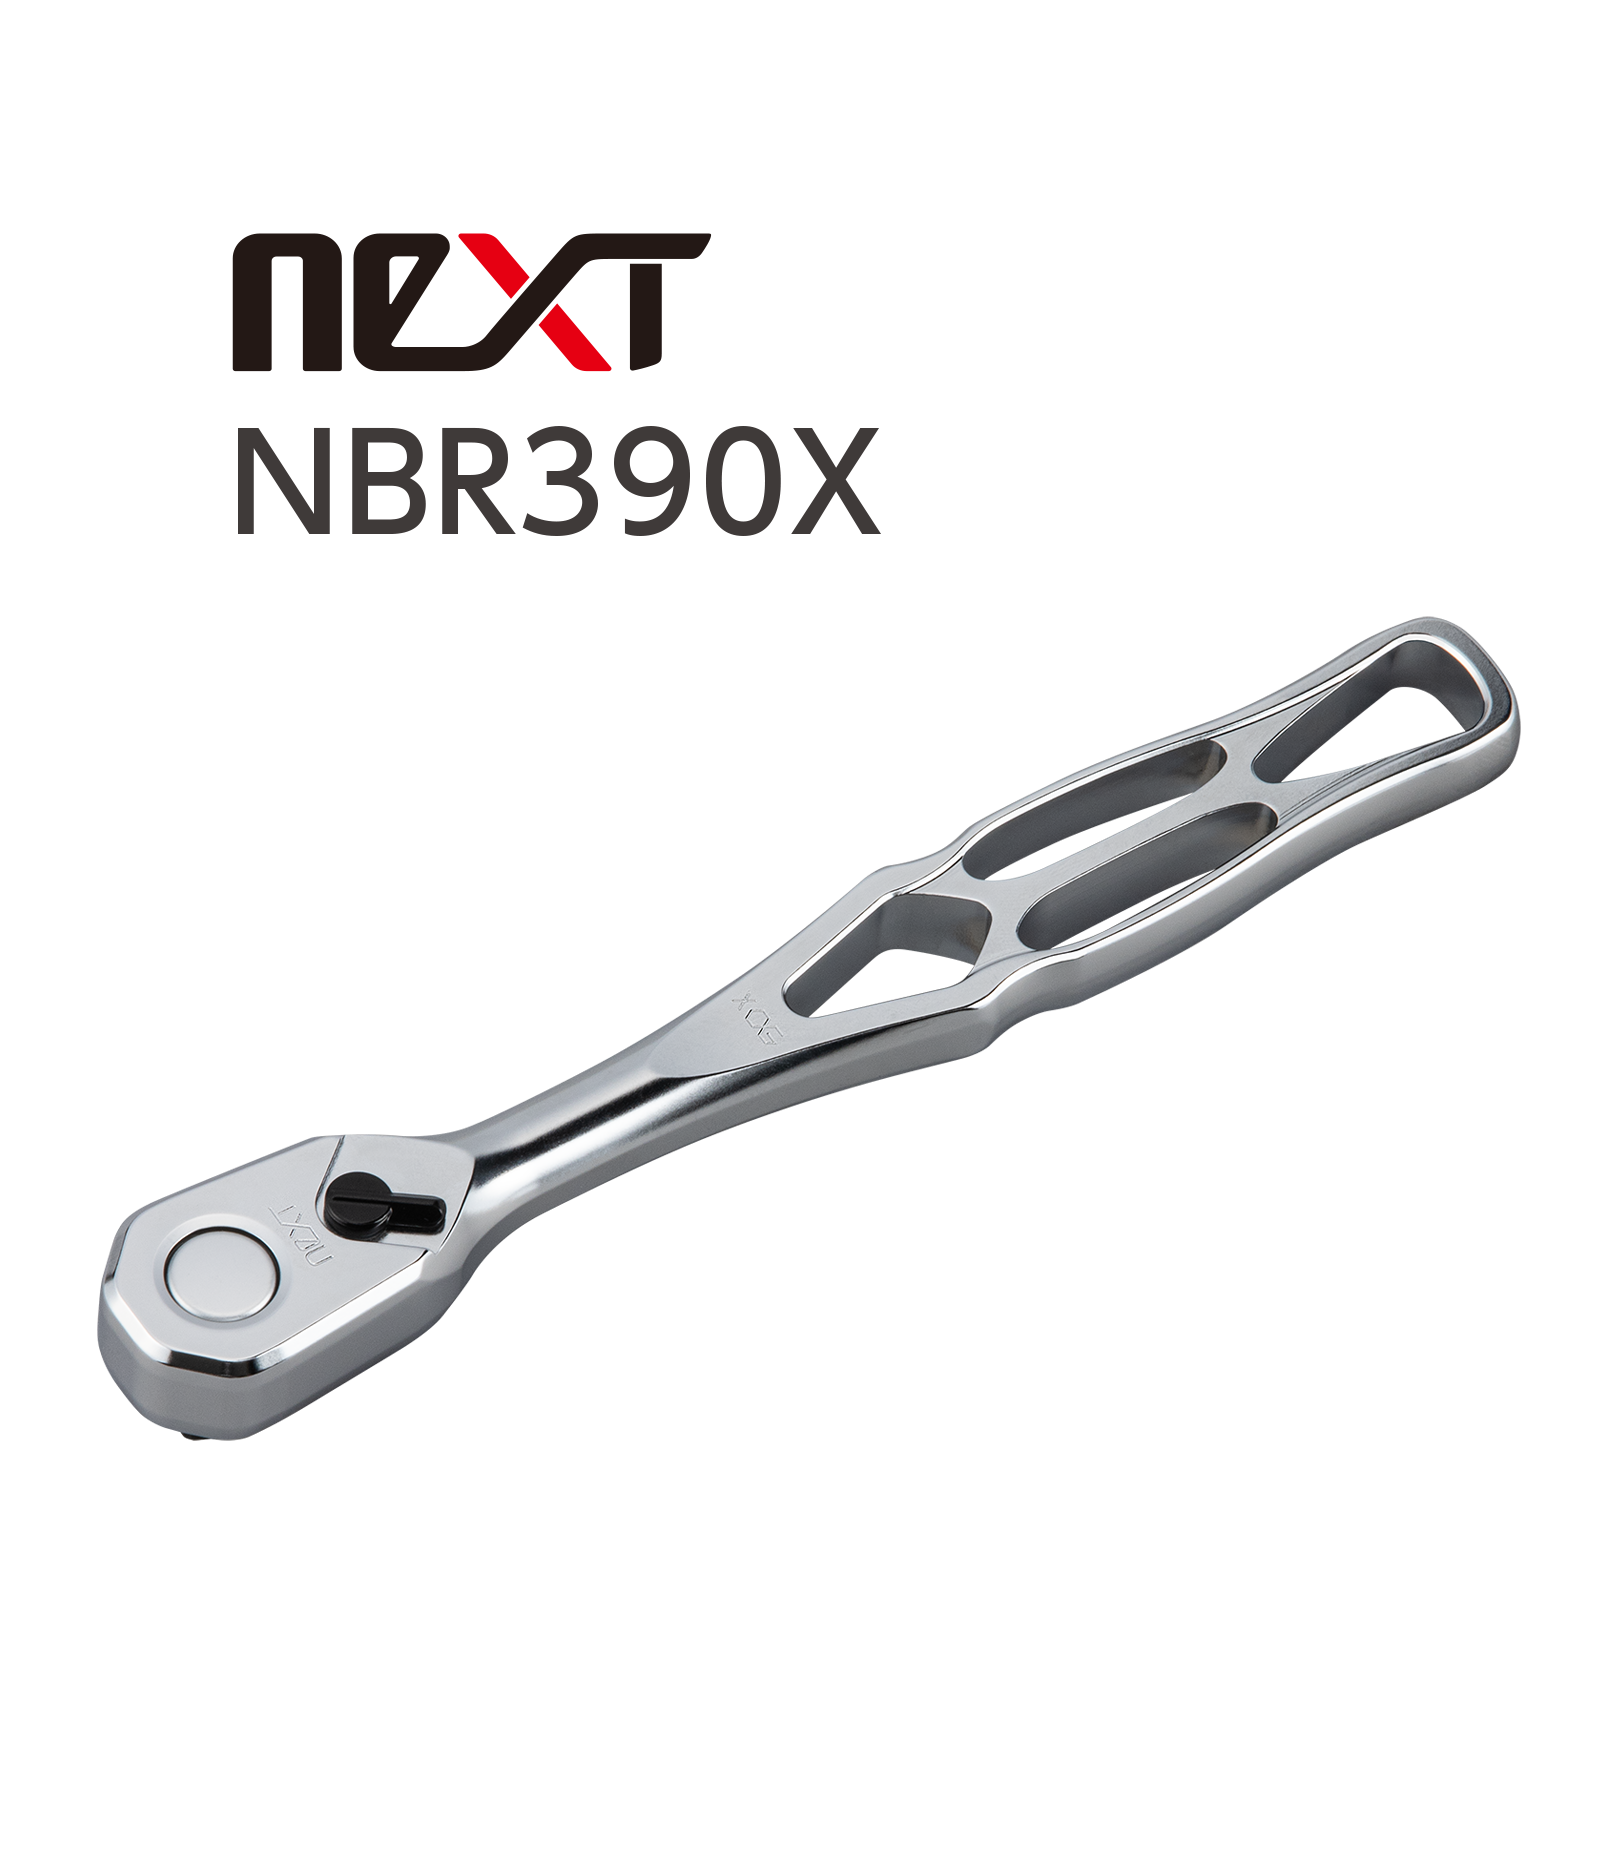 NBR390Xシリーズ